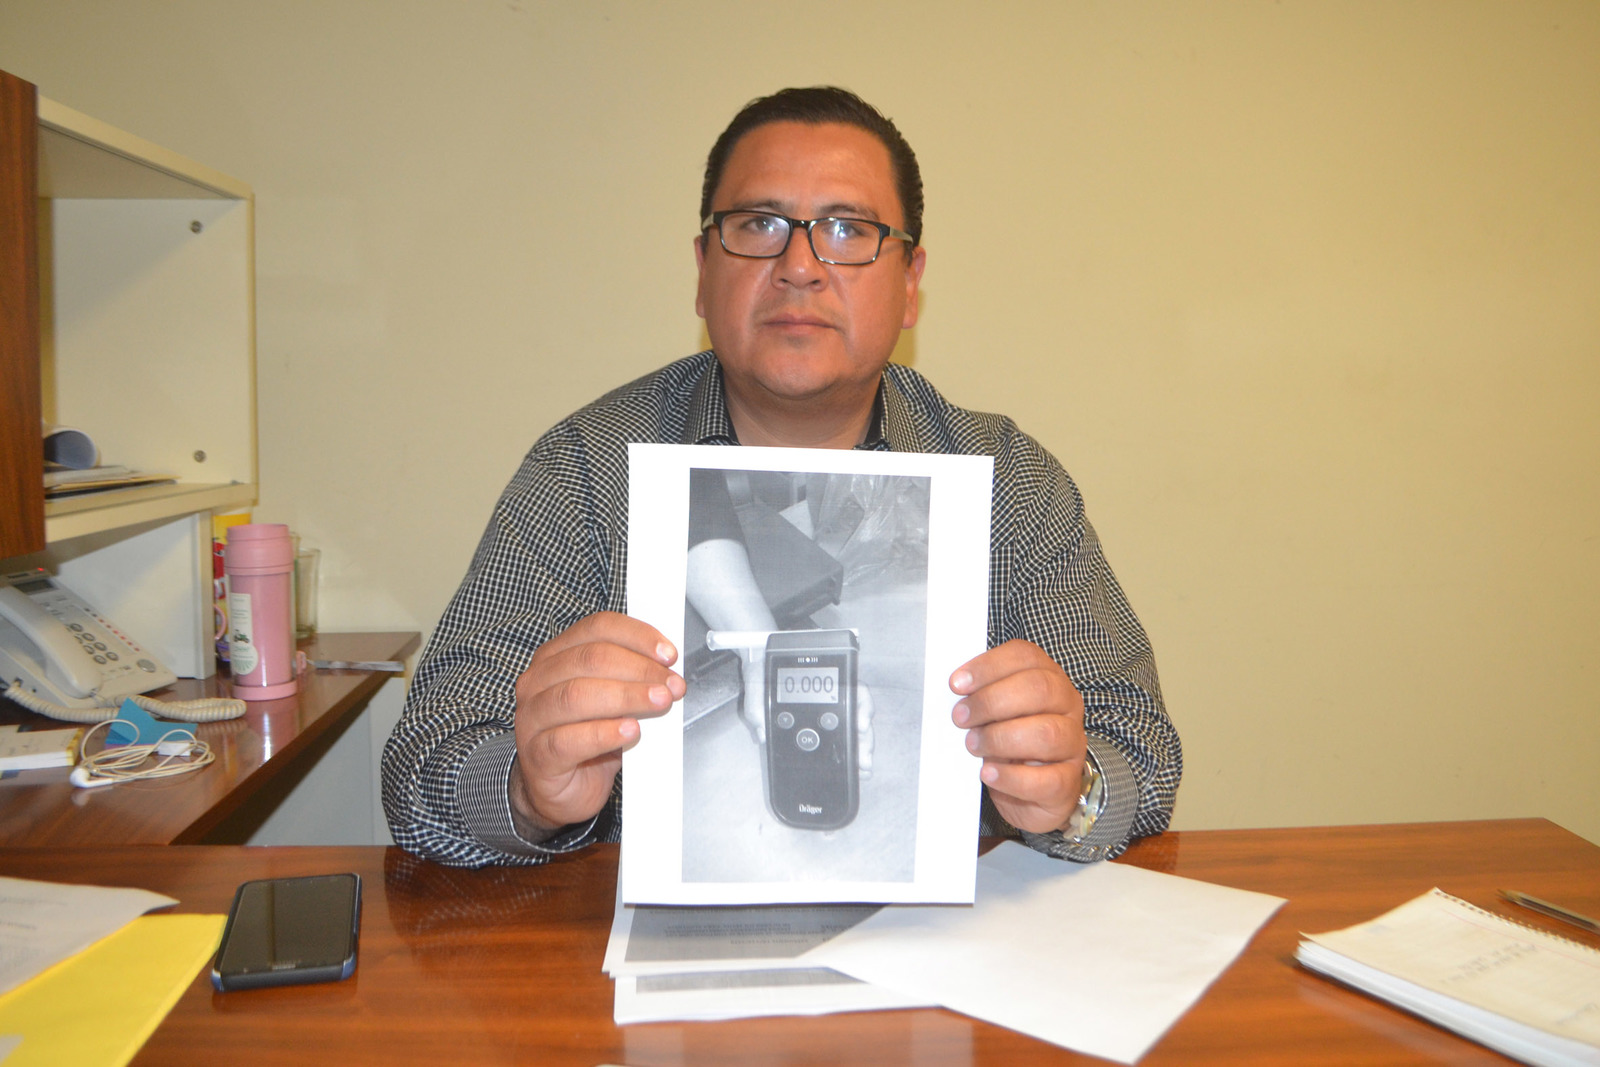 Ayer mostró esta imagen y aseguró que tras la detención que sufrió en la ciudad de Saltillo le practicaron la prueba alcoholemia, que salió negativa. (ANGÉLICA SANDOVAL)